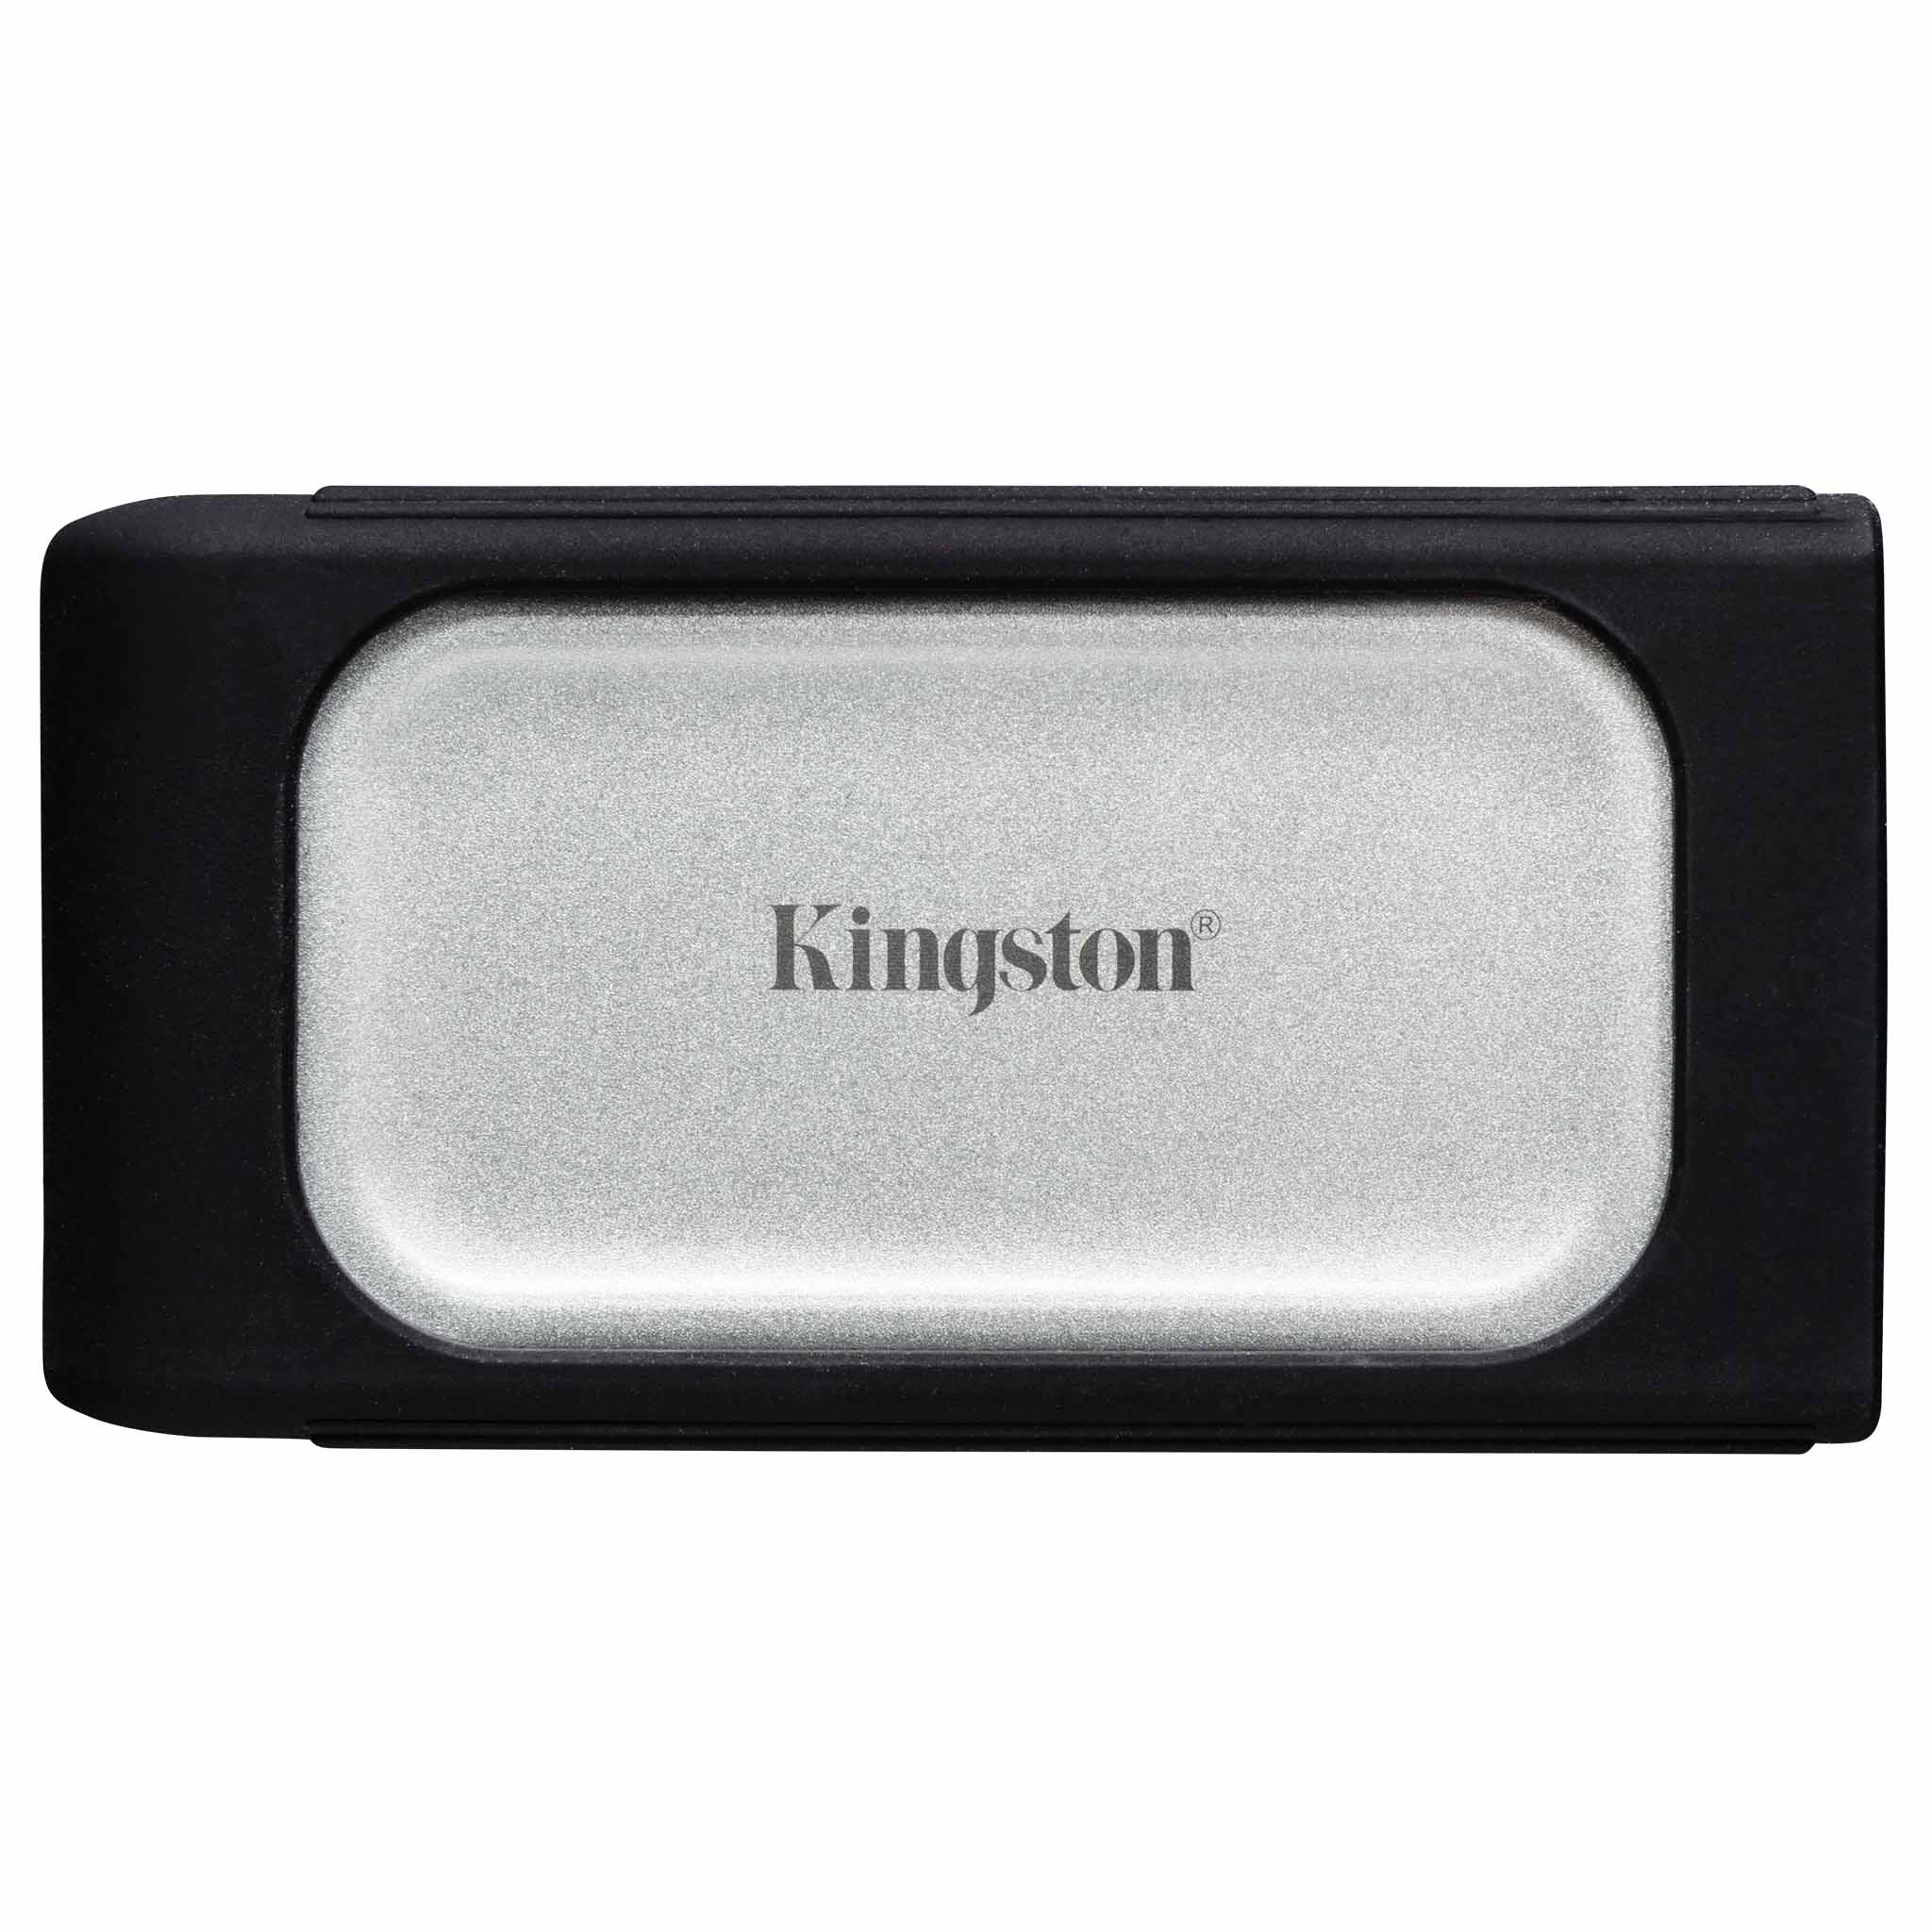 XS2000 External SSD – 500GB – 4TB - Kingston Technology